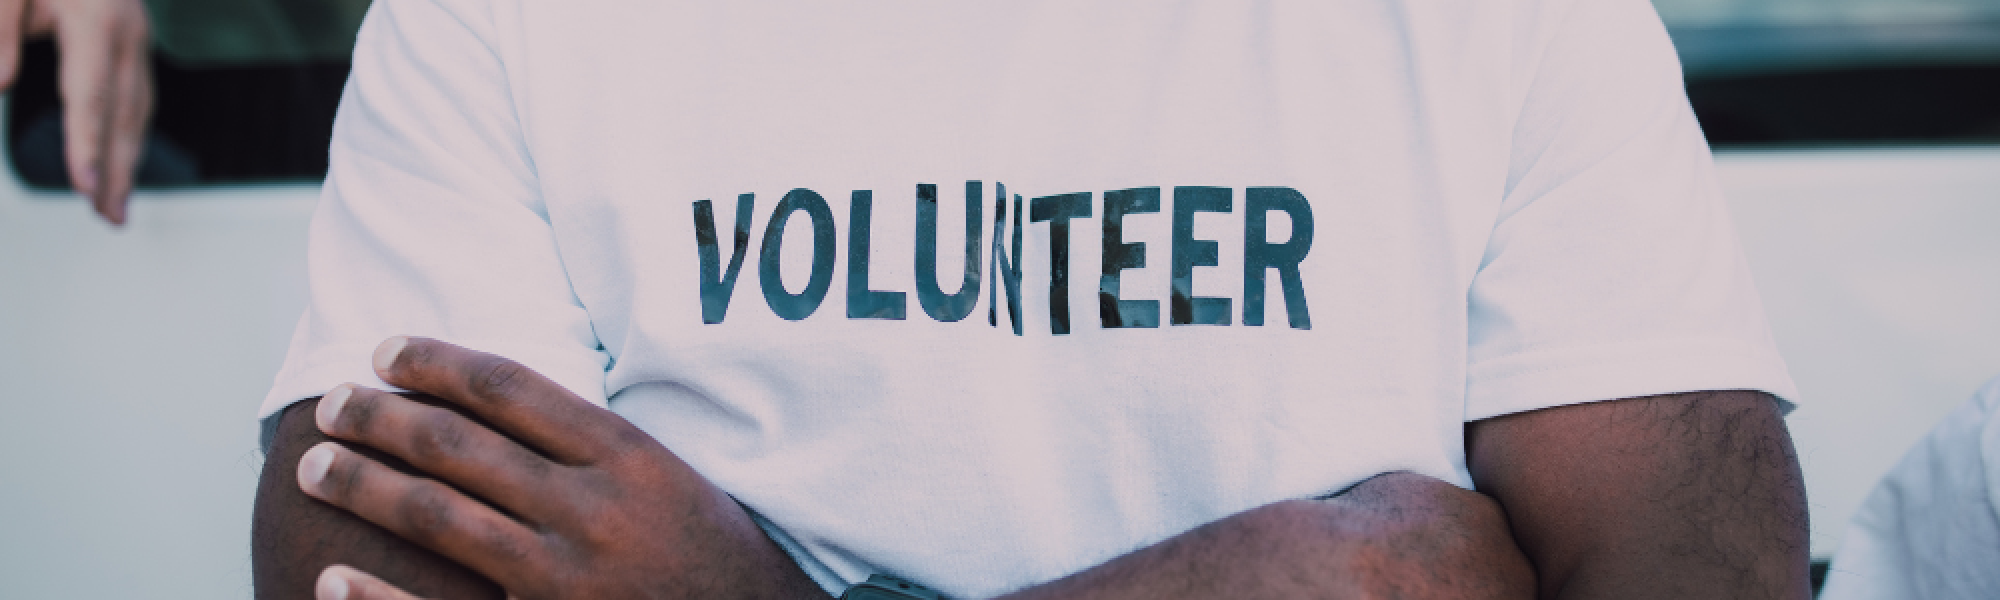 Volunteer in a shirt